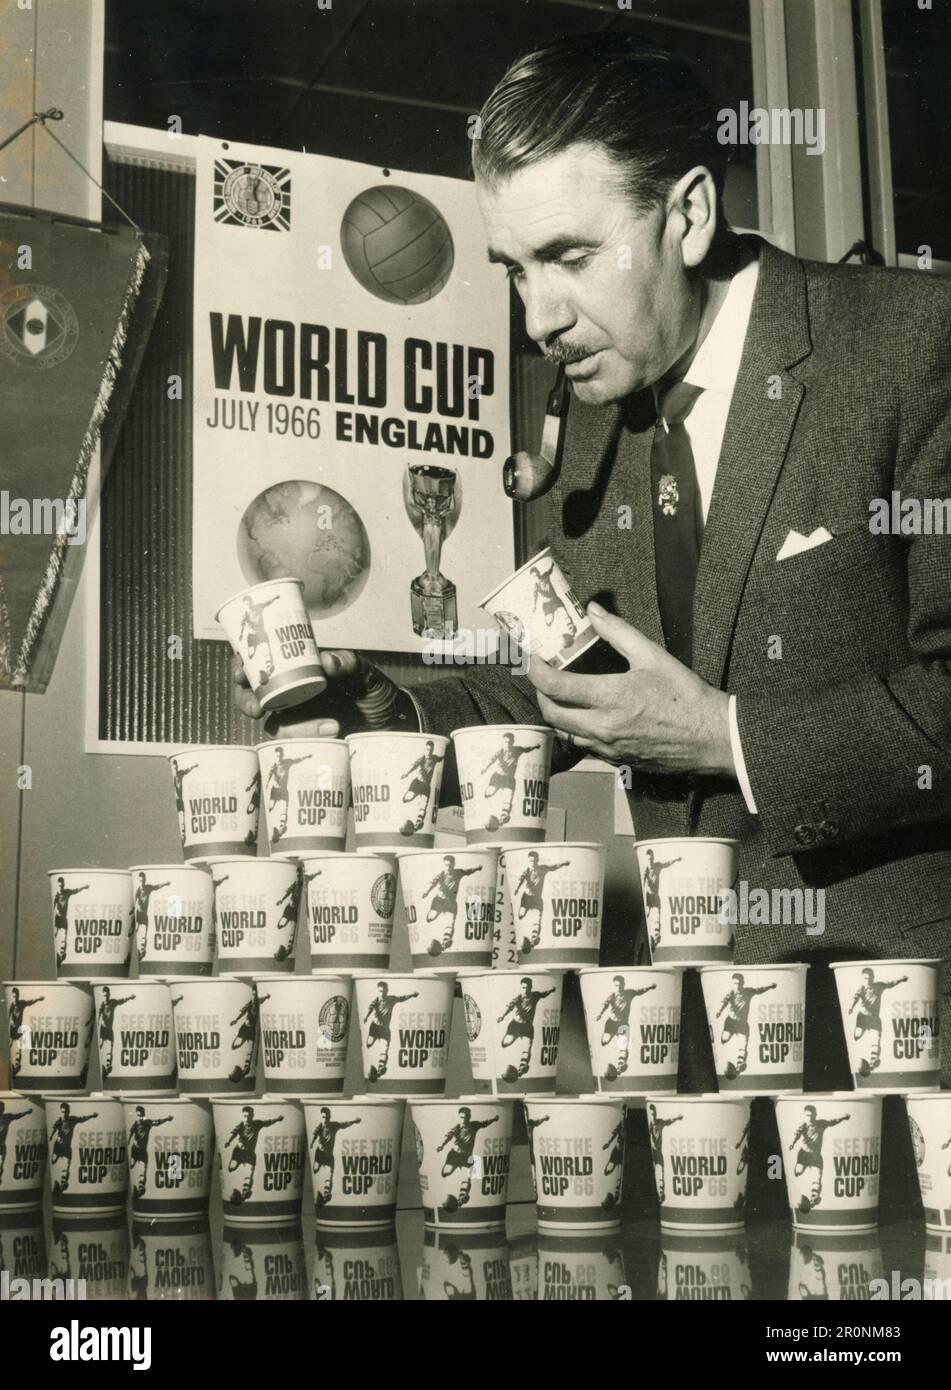 Addetto stampa e pubblicità dell'Organizzazione mondiale della Coppa del mondo d'Inghilterra, Regno Unito 1965 Foto Stock